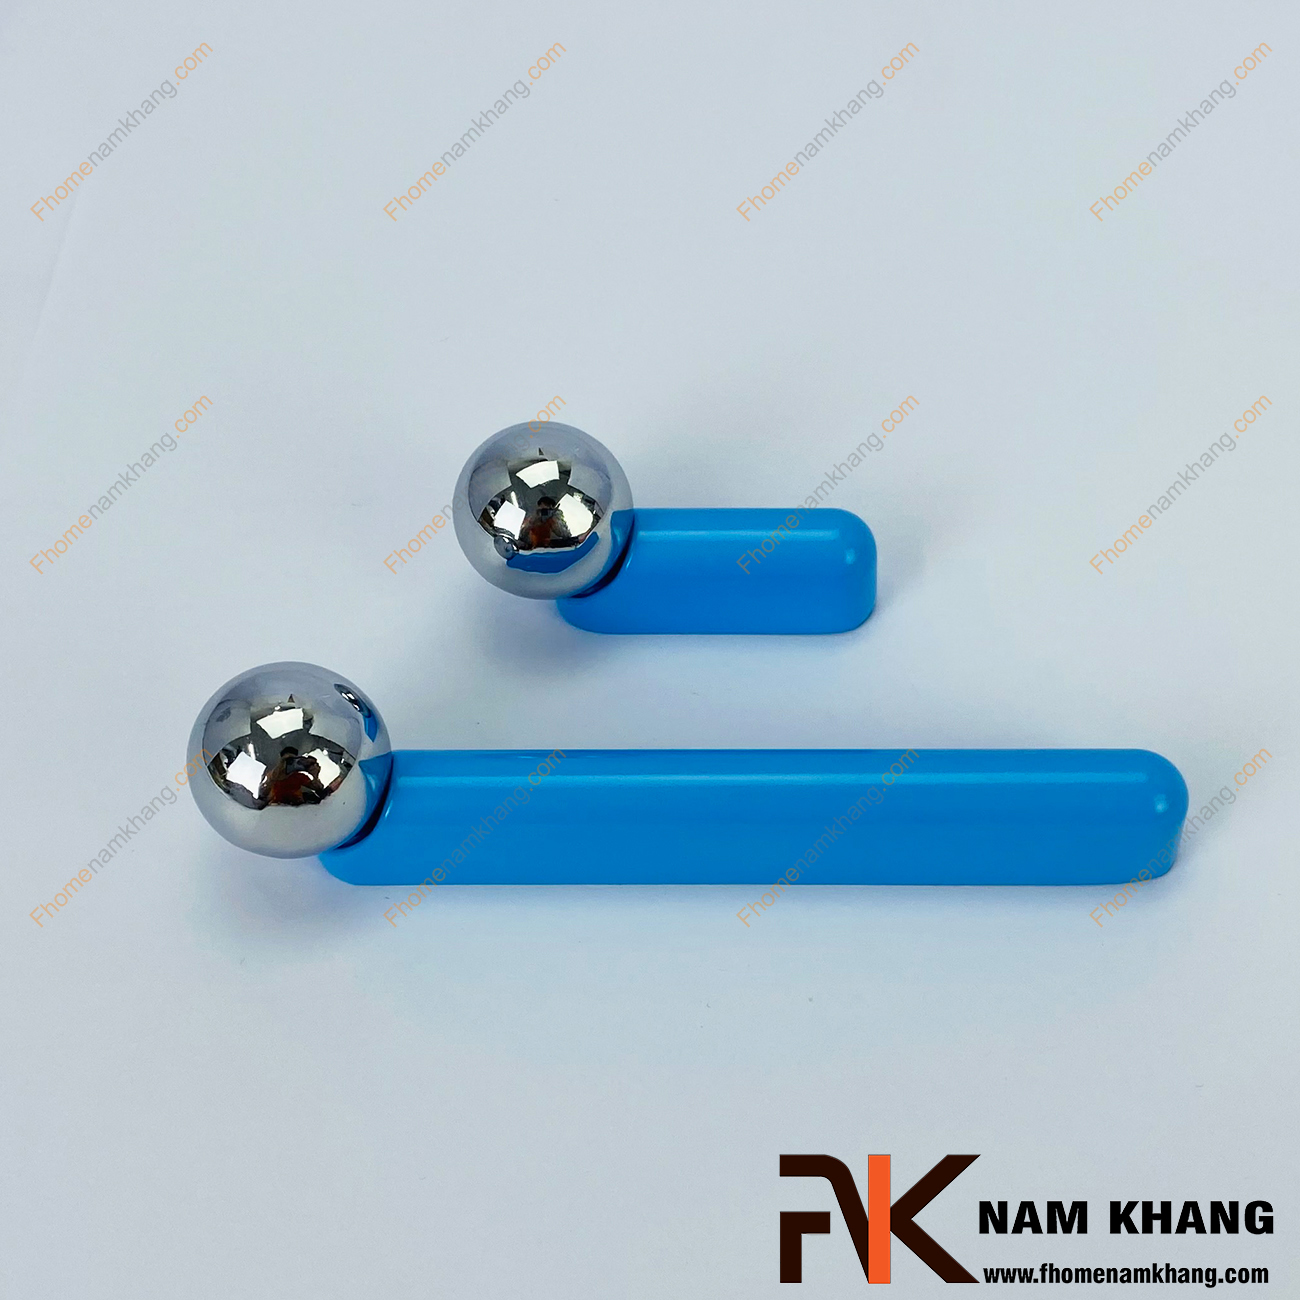 Tay nắm tủ dạng thanh tròn xanh dương NK393-XB - sản phẩm tay nắm tủ dạng lắp ghép từ 2 phần thanh tròn và viên bi cầu độc đáo.